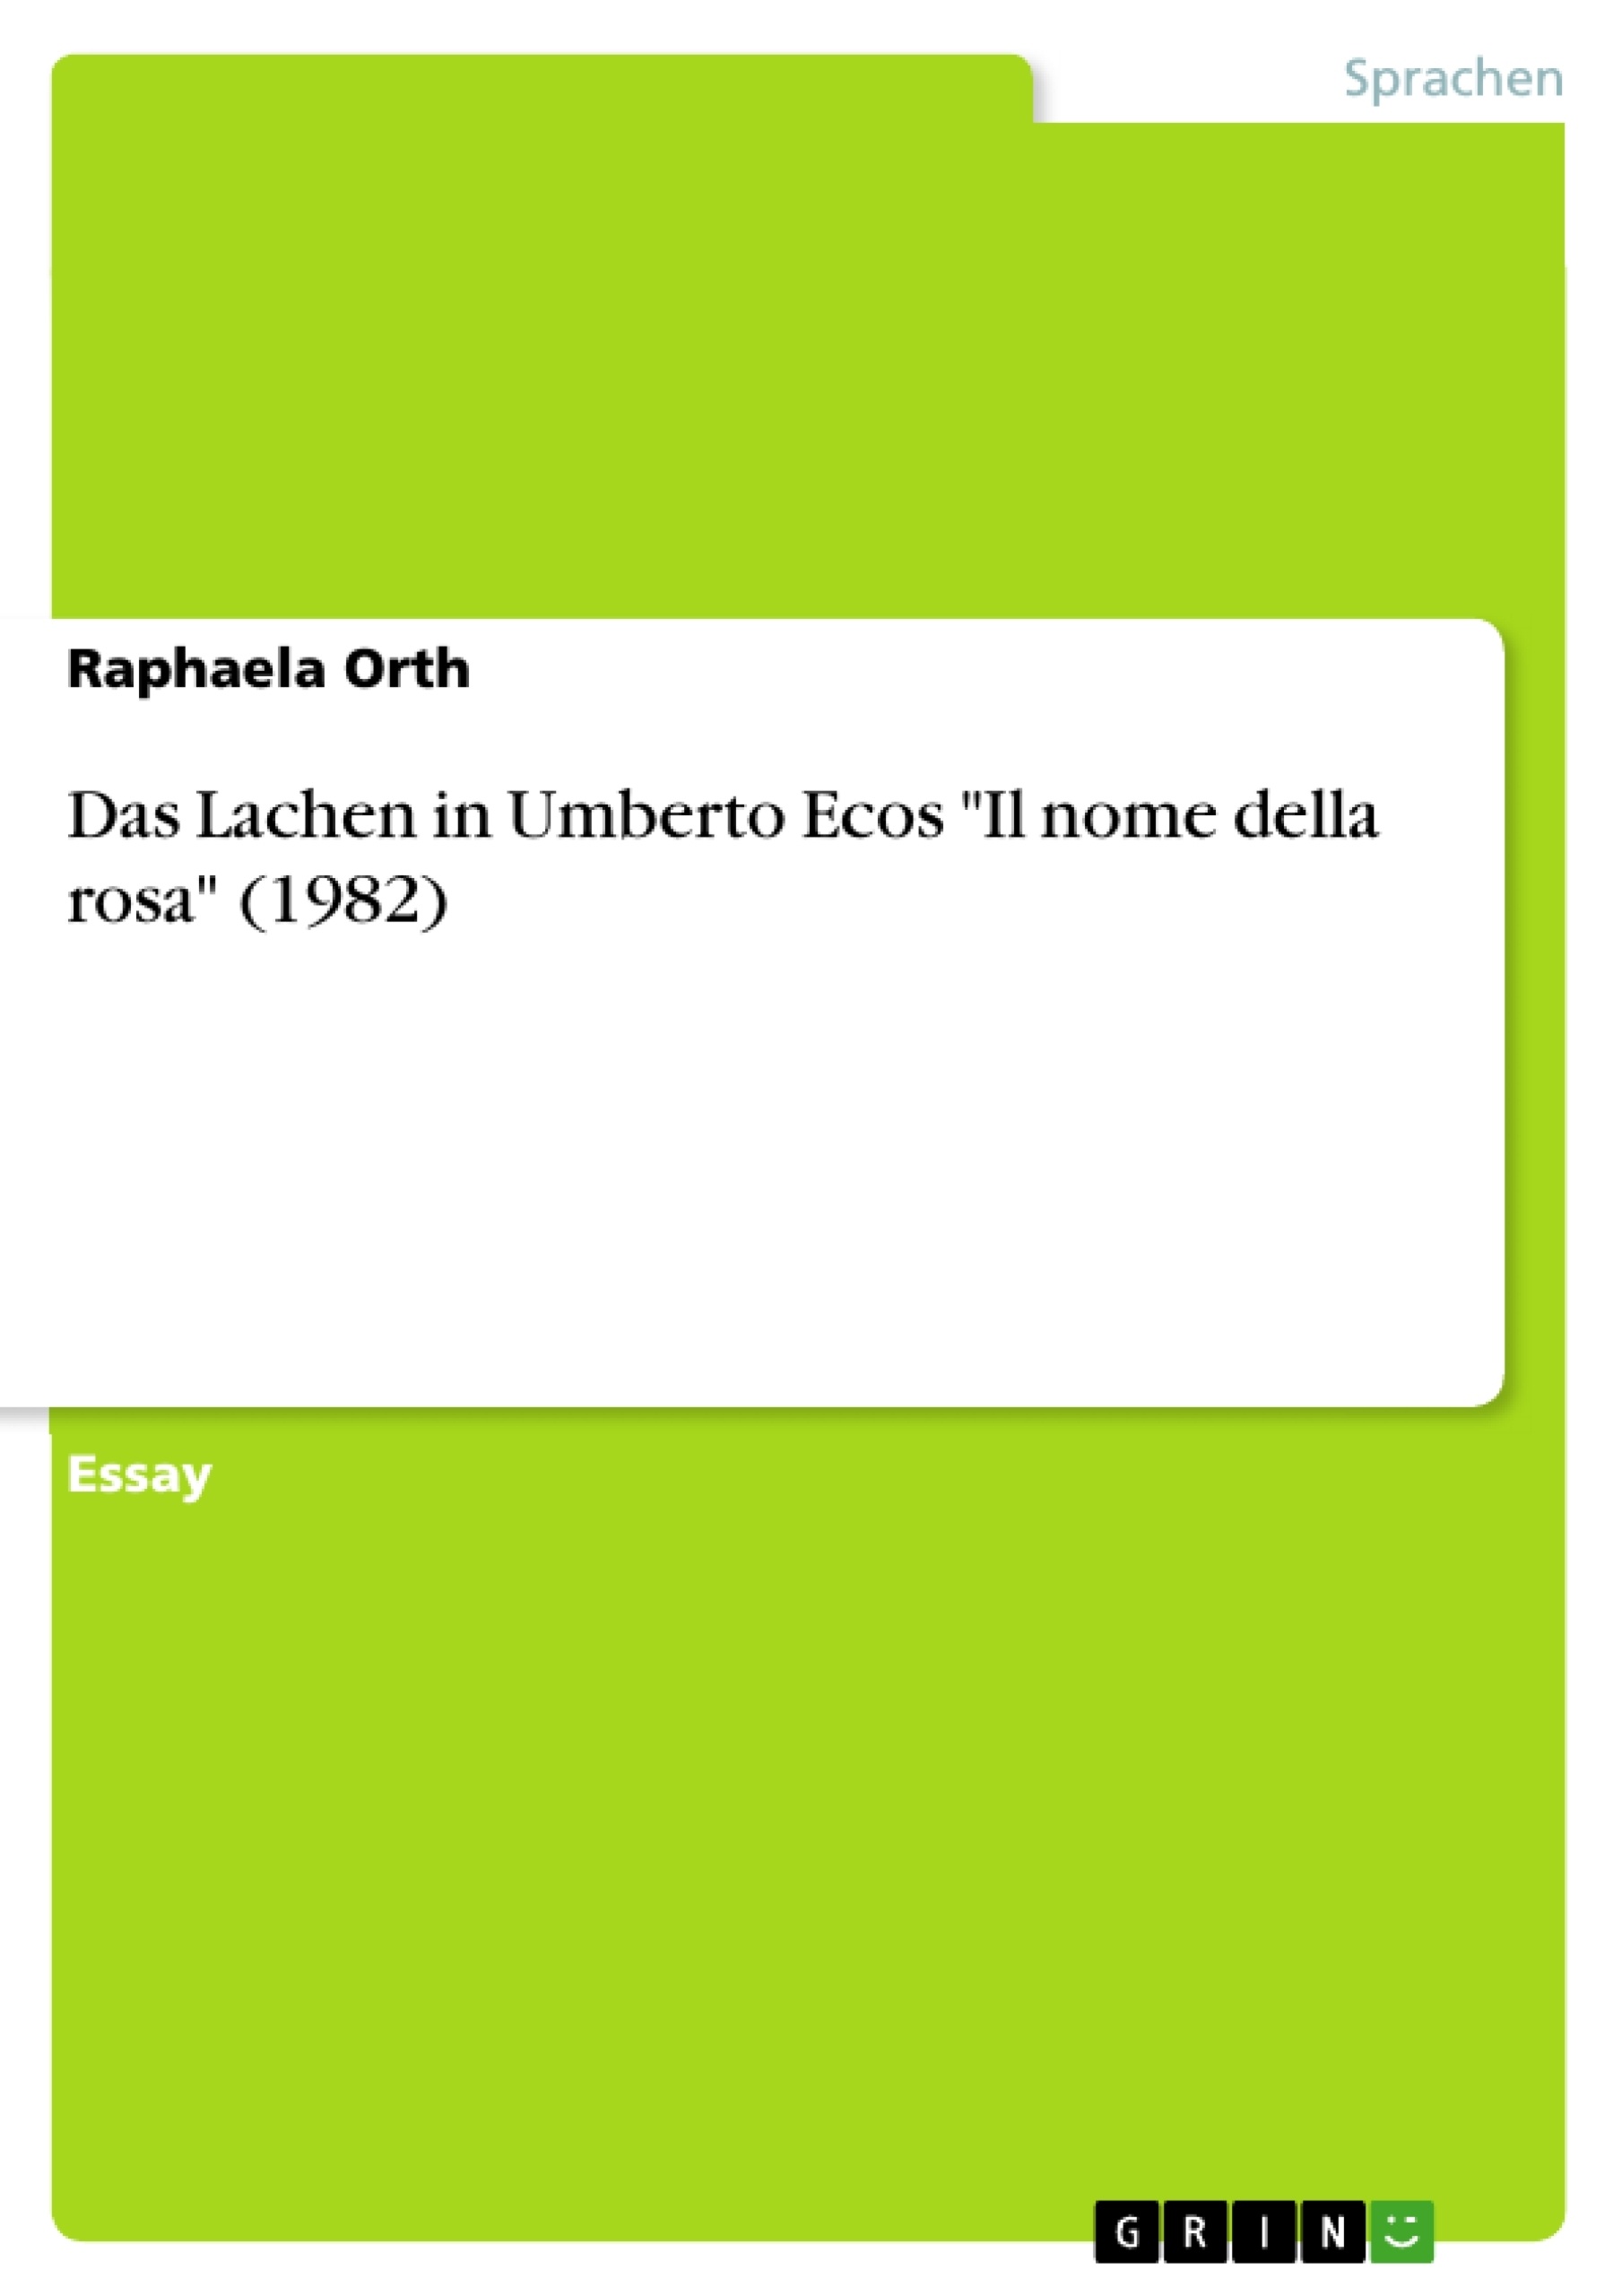 Título: Das Lachen in Umberto Ecos "Il nome della rosa" (1982)